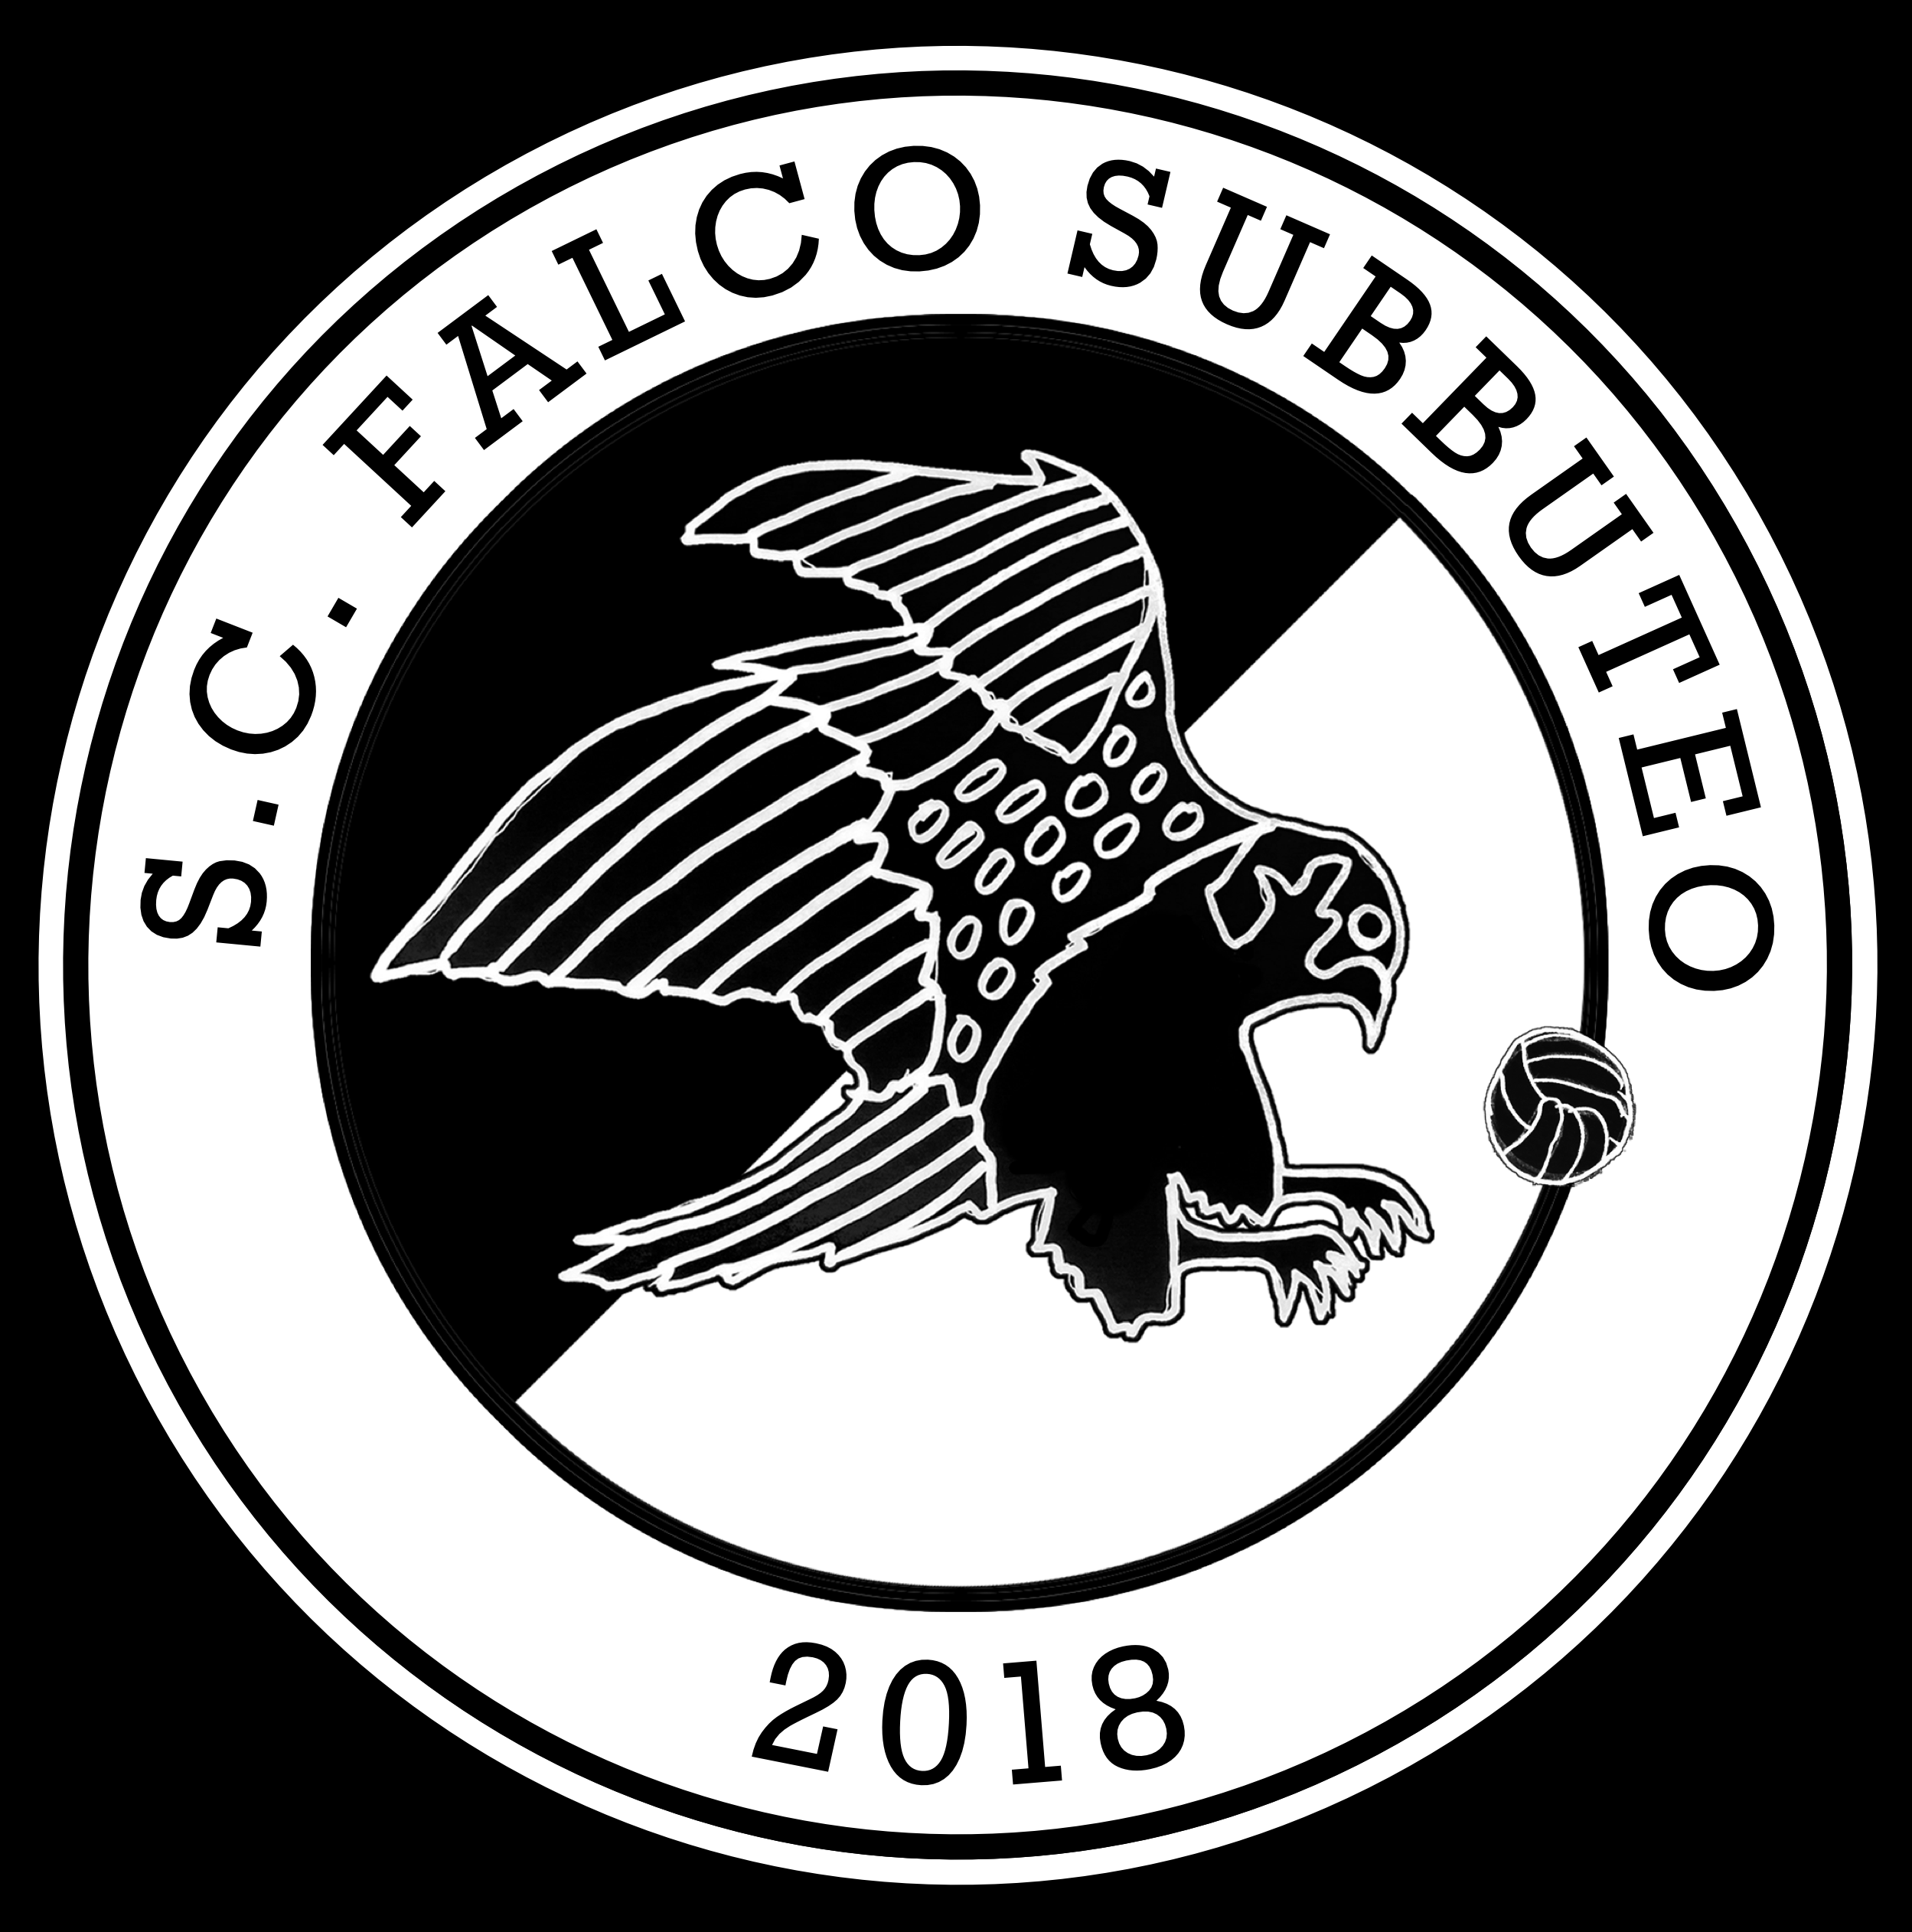 SC Falco Subbuteo